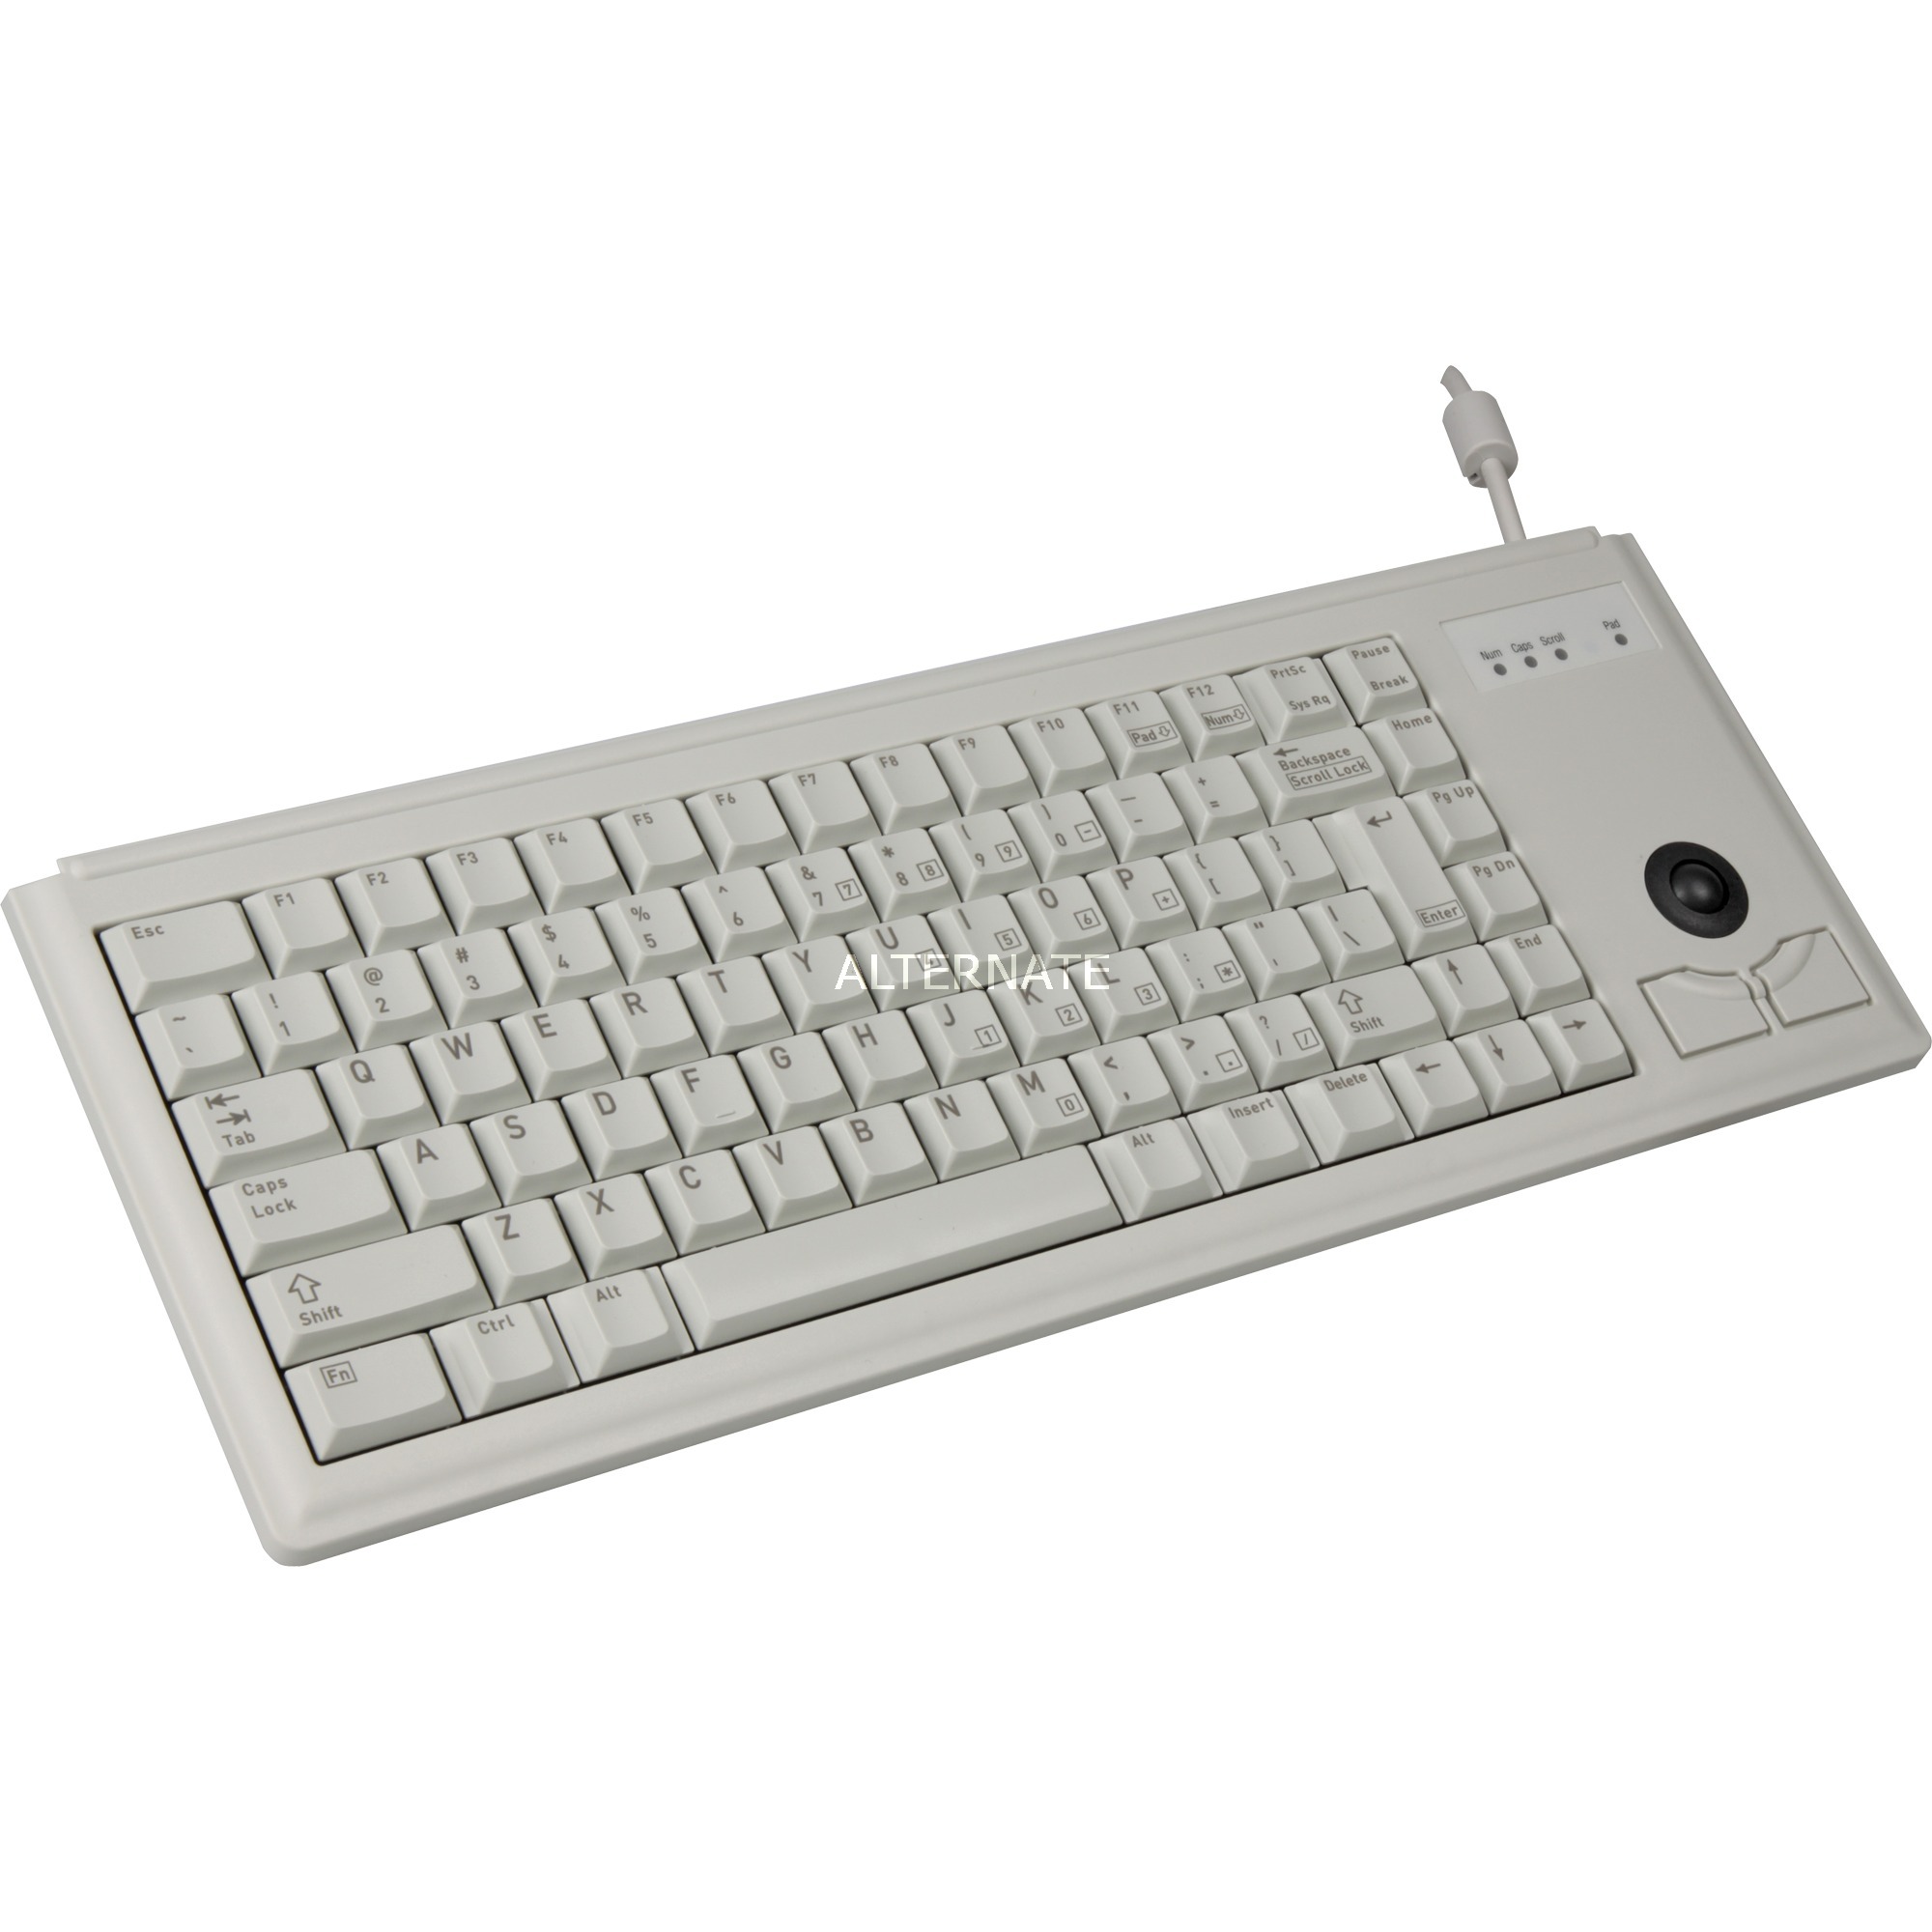 Image of Alternate - Compact-Keyboard G84-4400, Tastatur online einkaufen bei Alternate